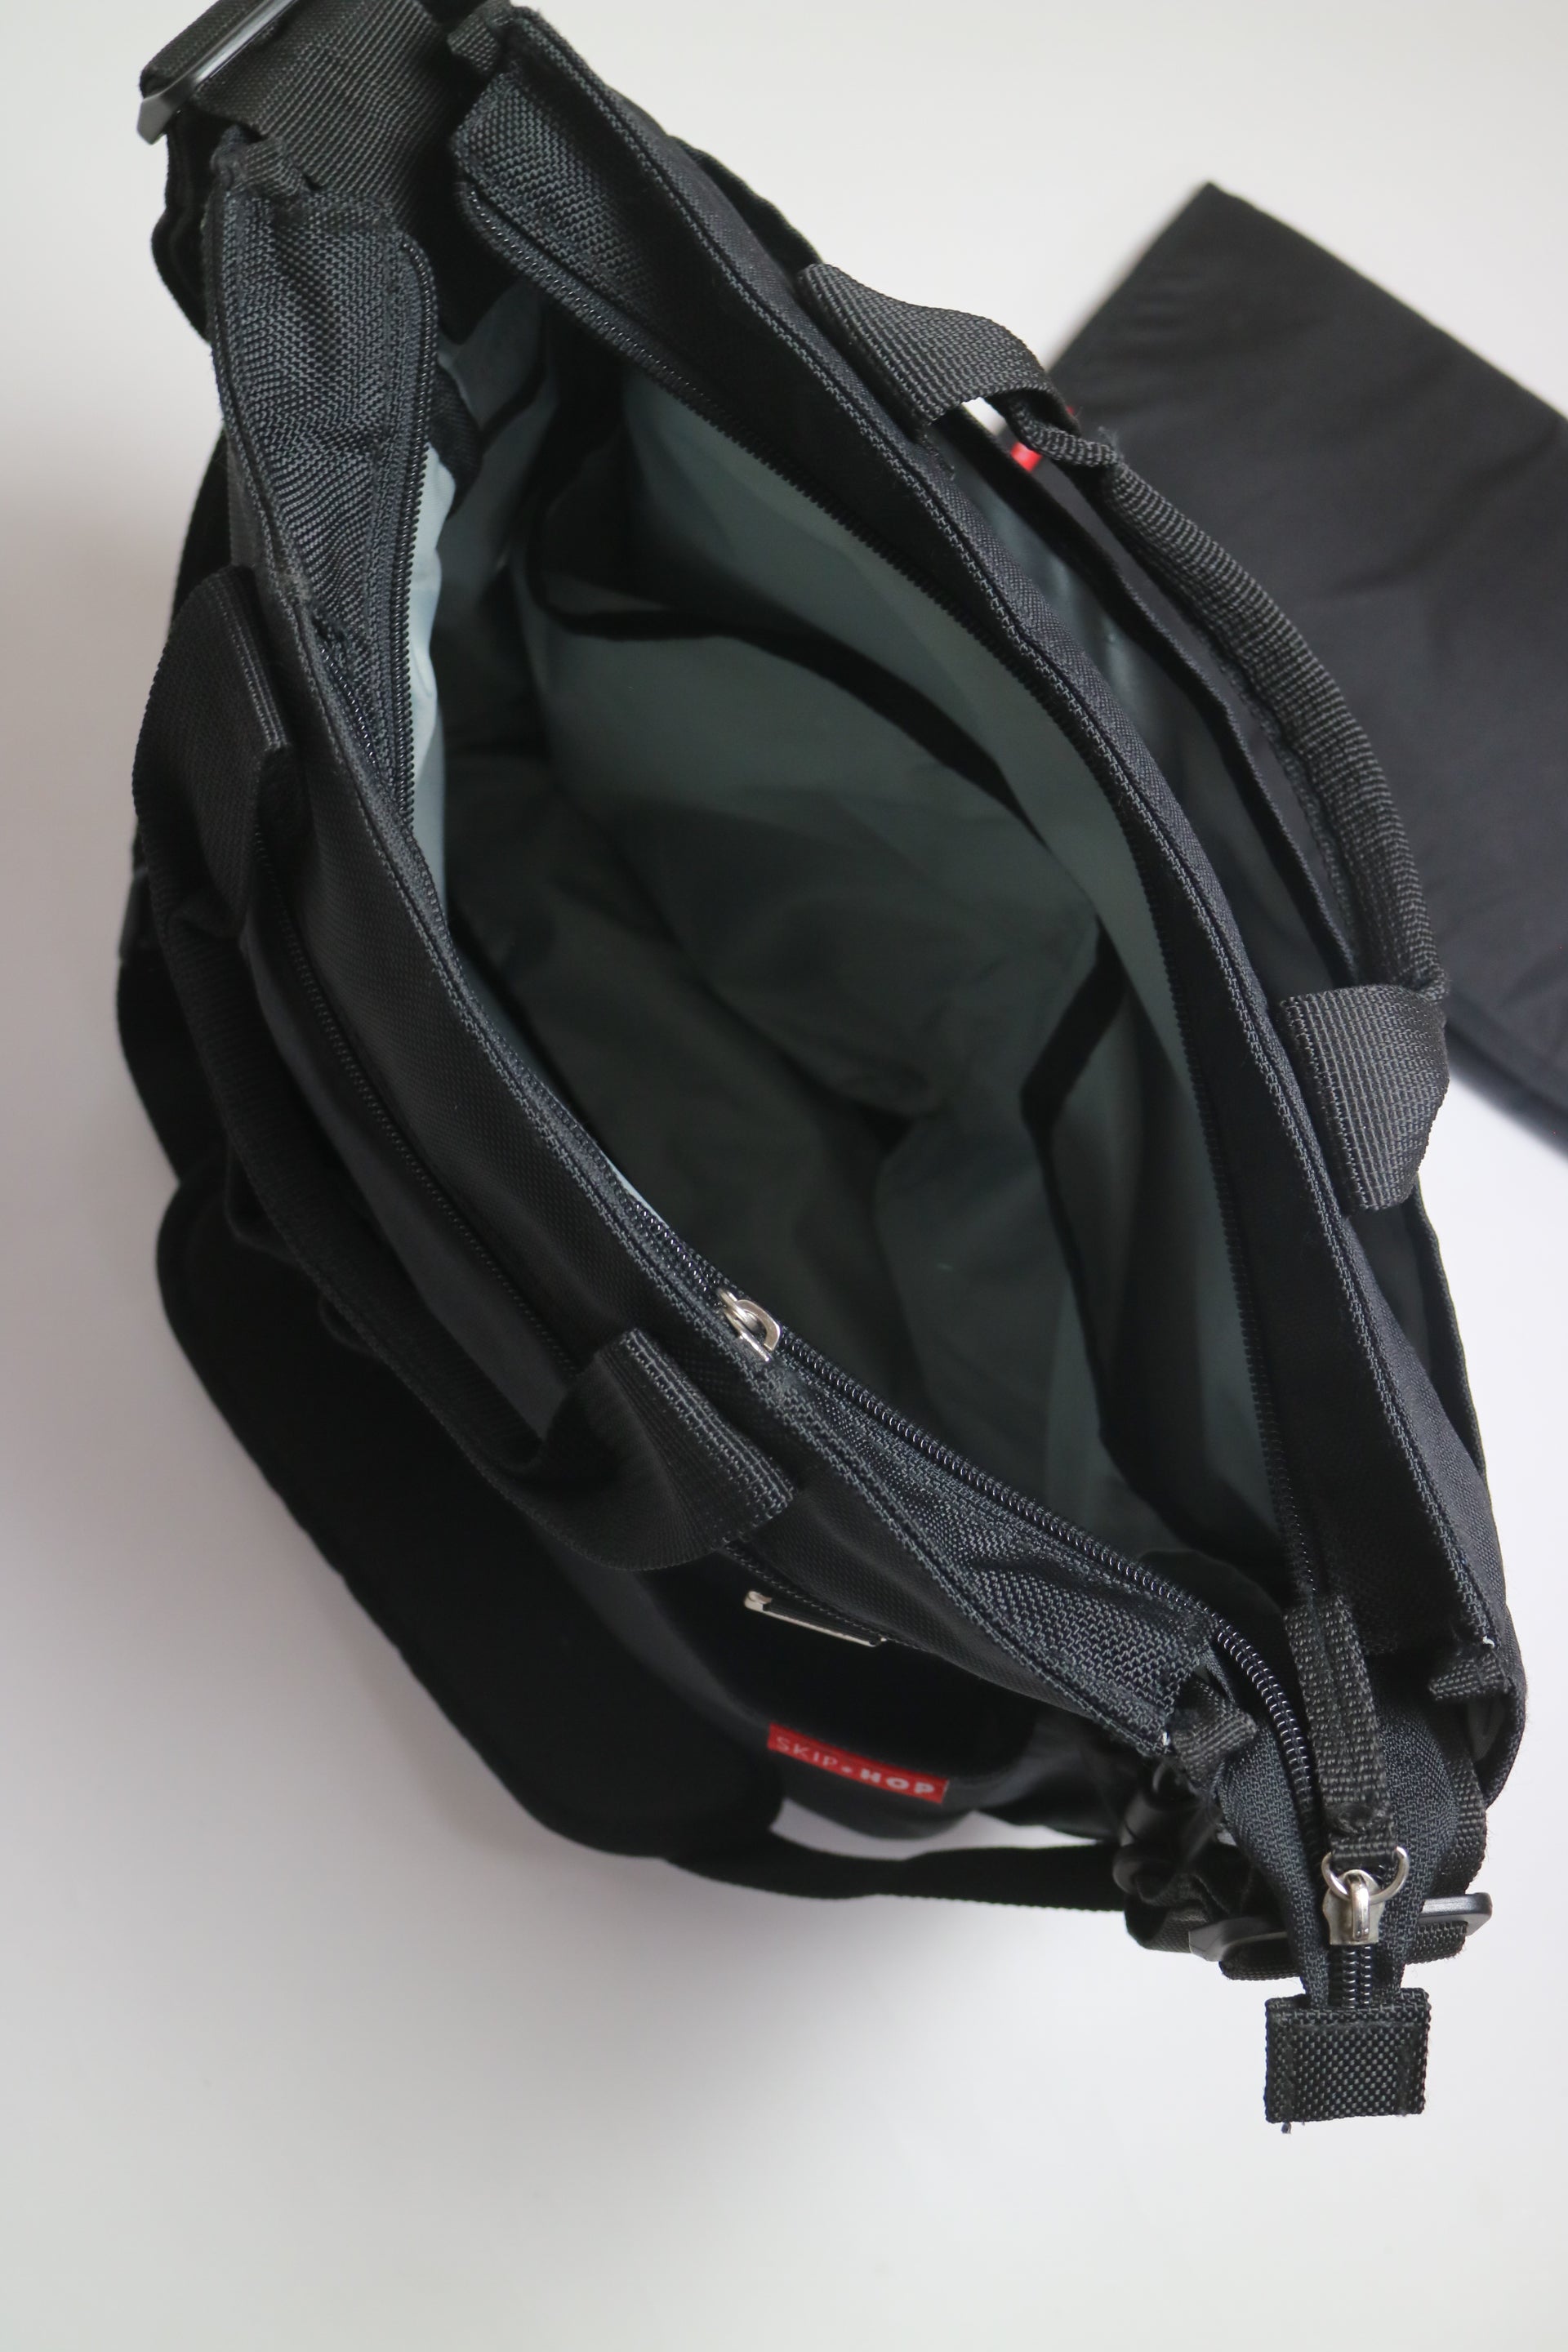 Praktiska skötväskan Skip Hops Duo Signature i svart, som kan bäras både i handen och över axeln. Väskan har både sidofack och inner- och ytterfickor, för bra förvaring. Flera av de stora facken är även säkrade med blixtlås.